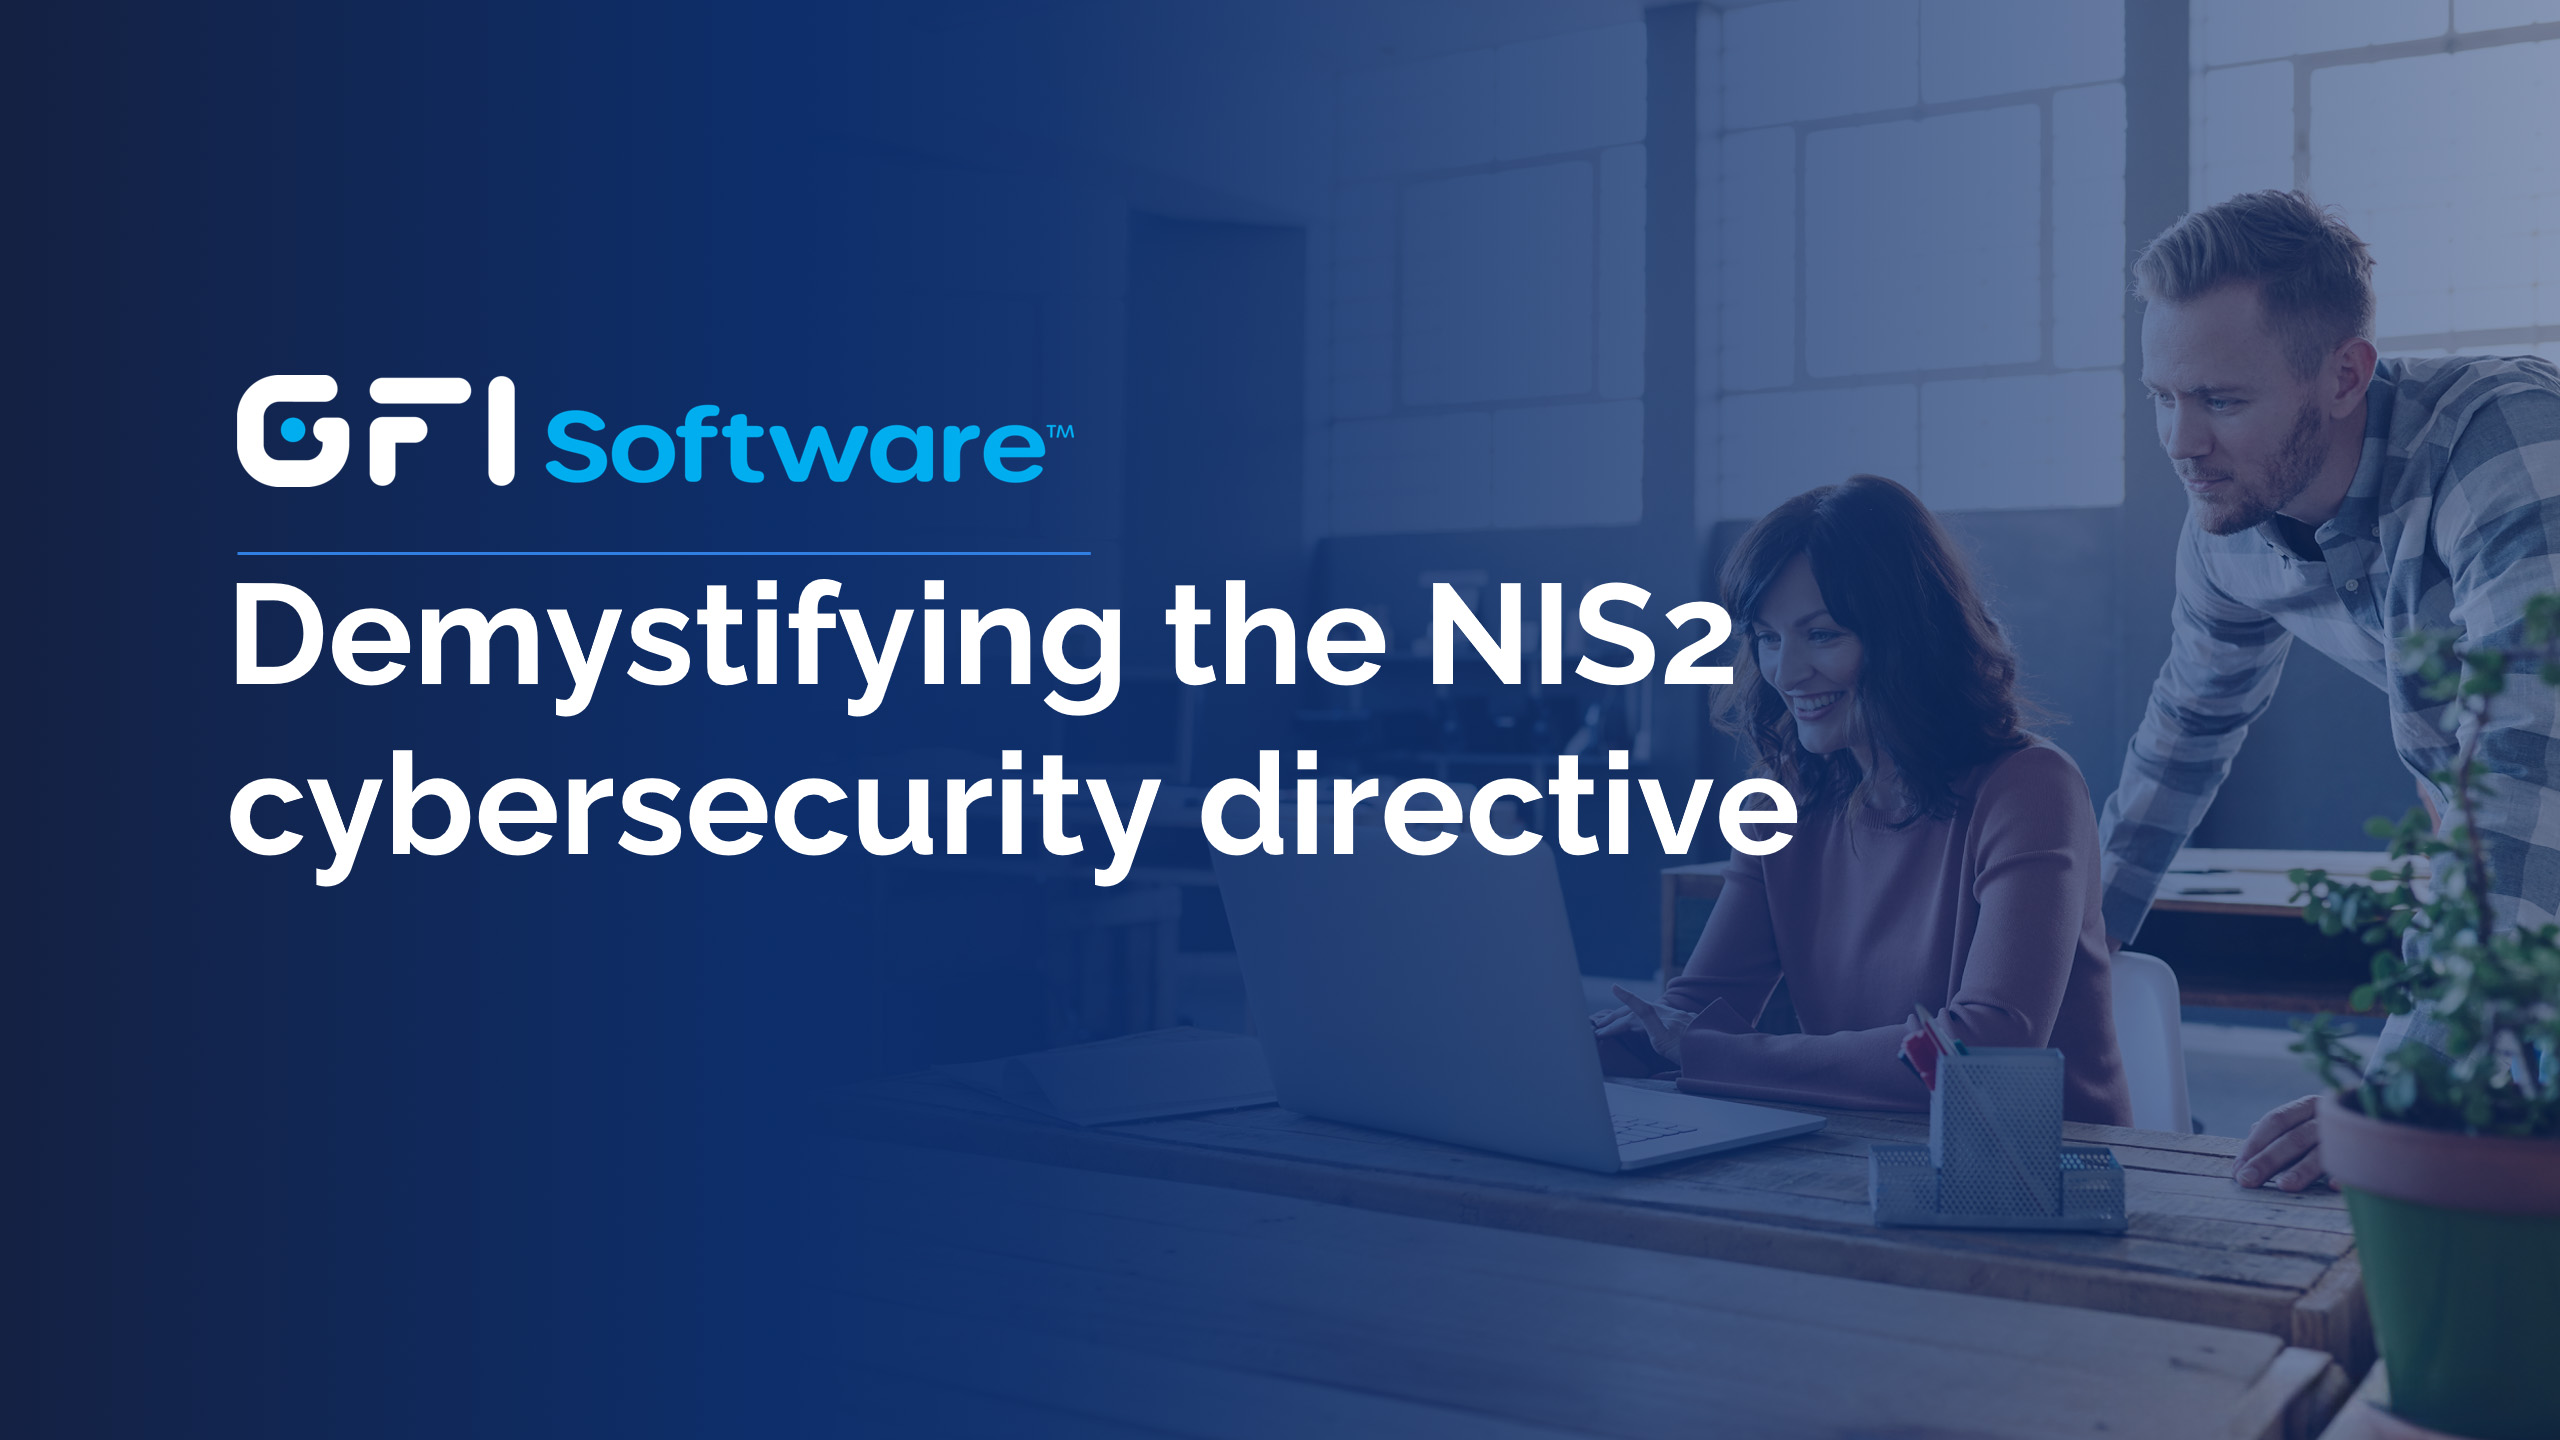 Demistificazione della direttiva sulla sicurezza informatica NIS2